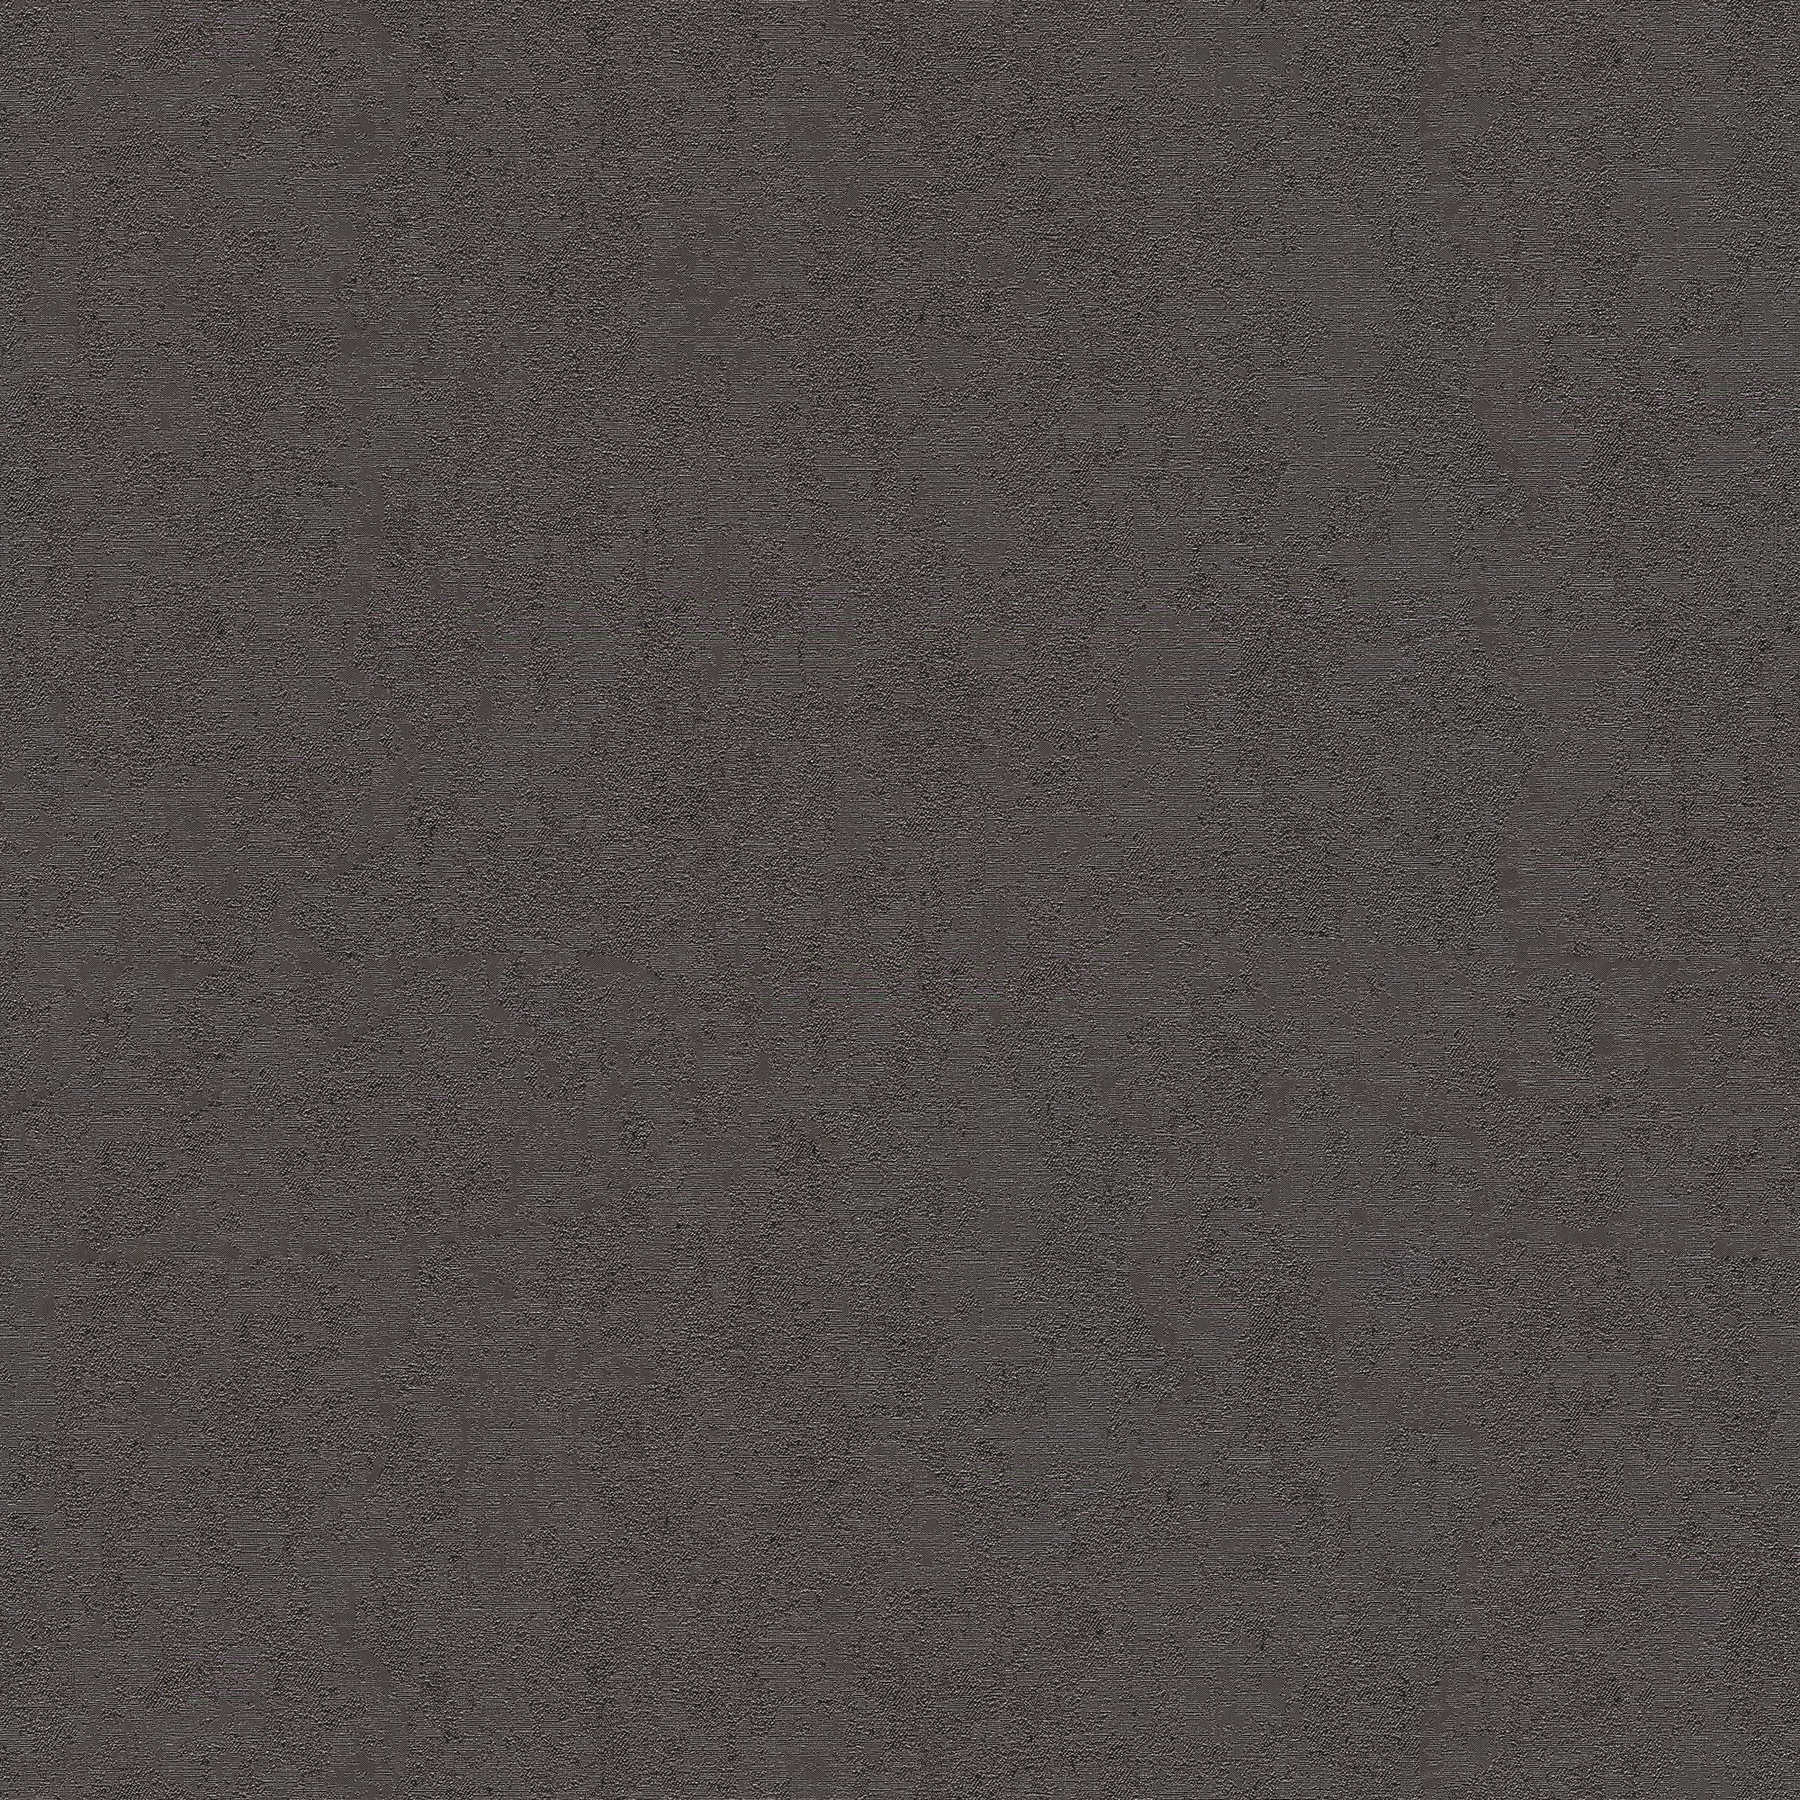 VERSACE Home Tapete Anthrazit mit besonderem Glanz-Finish – Schwarz, Grau
